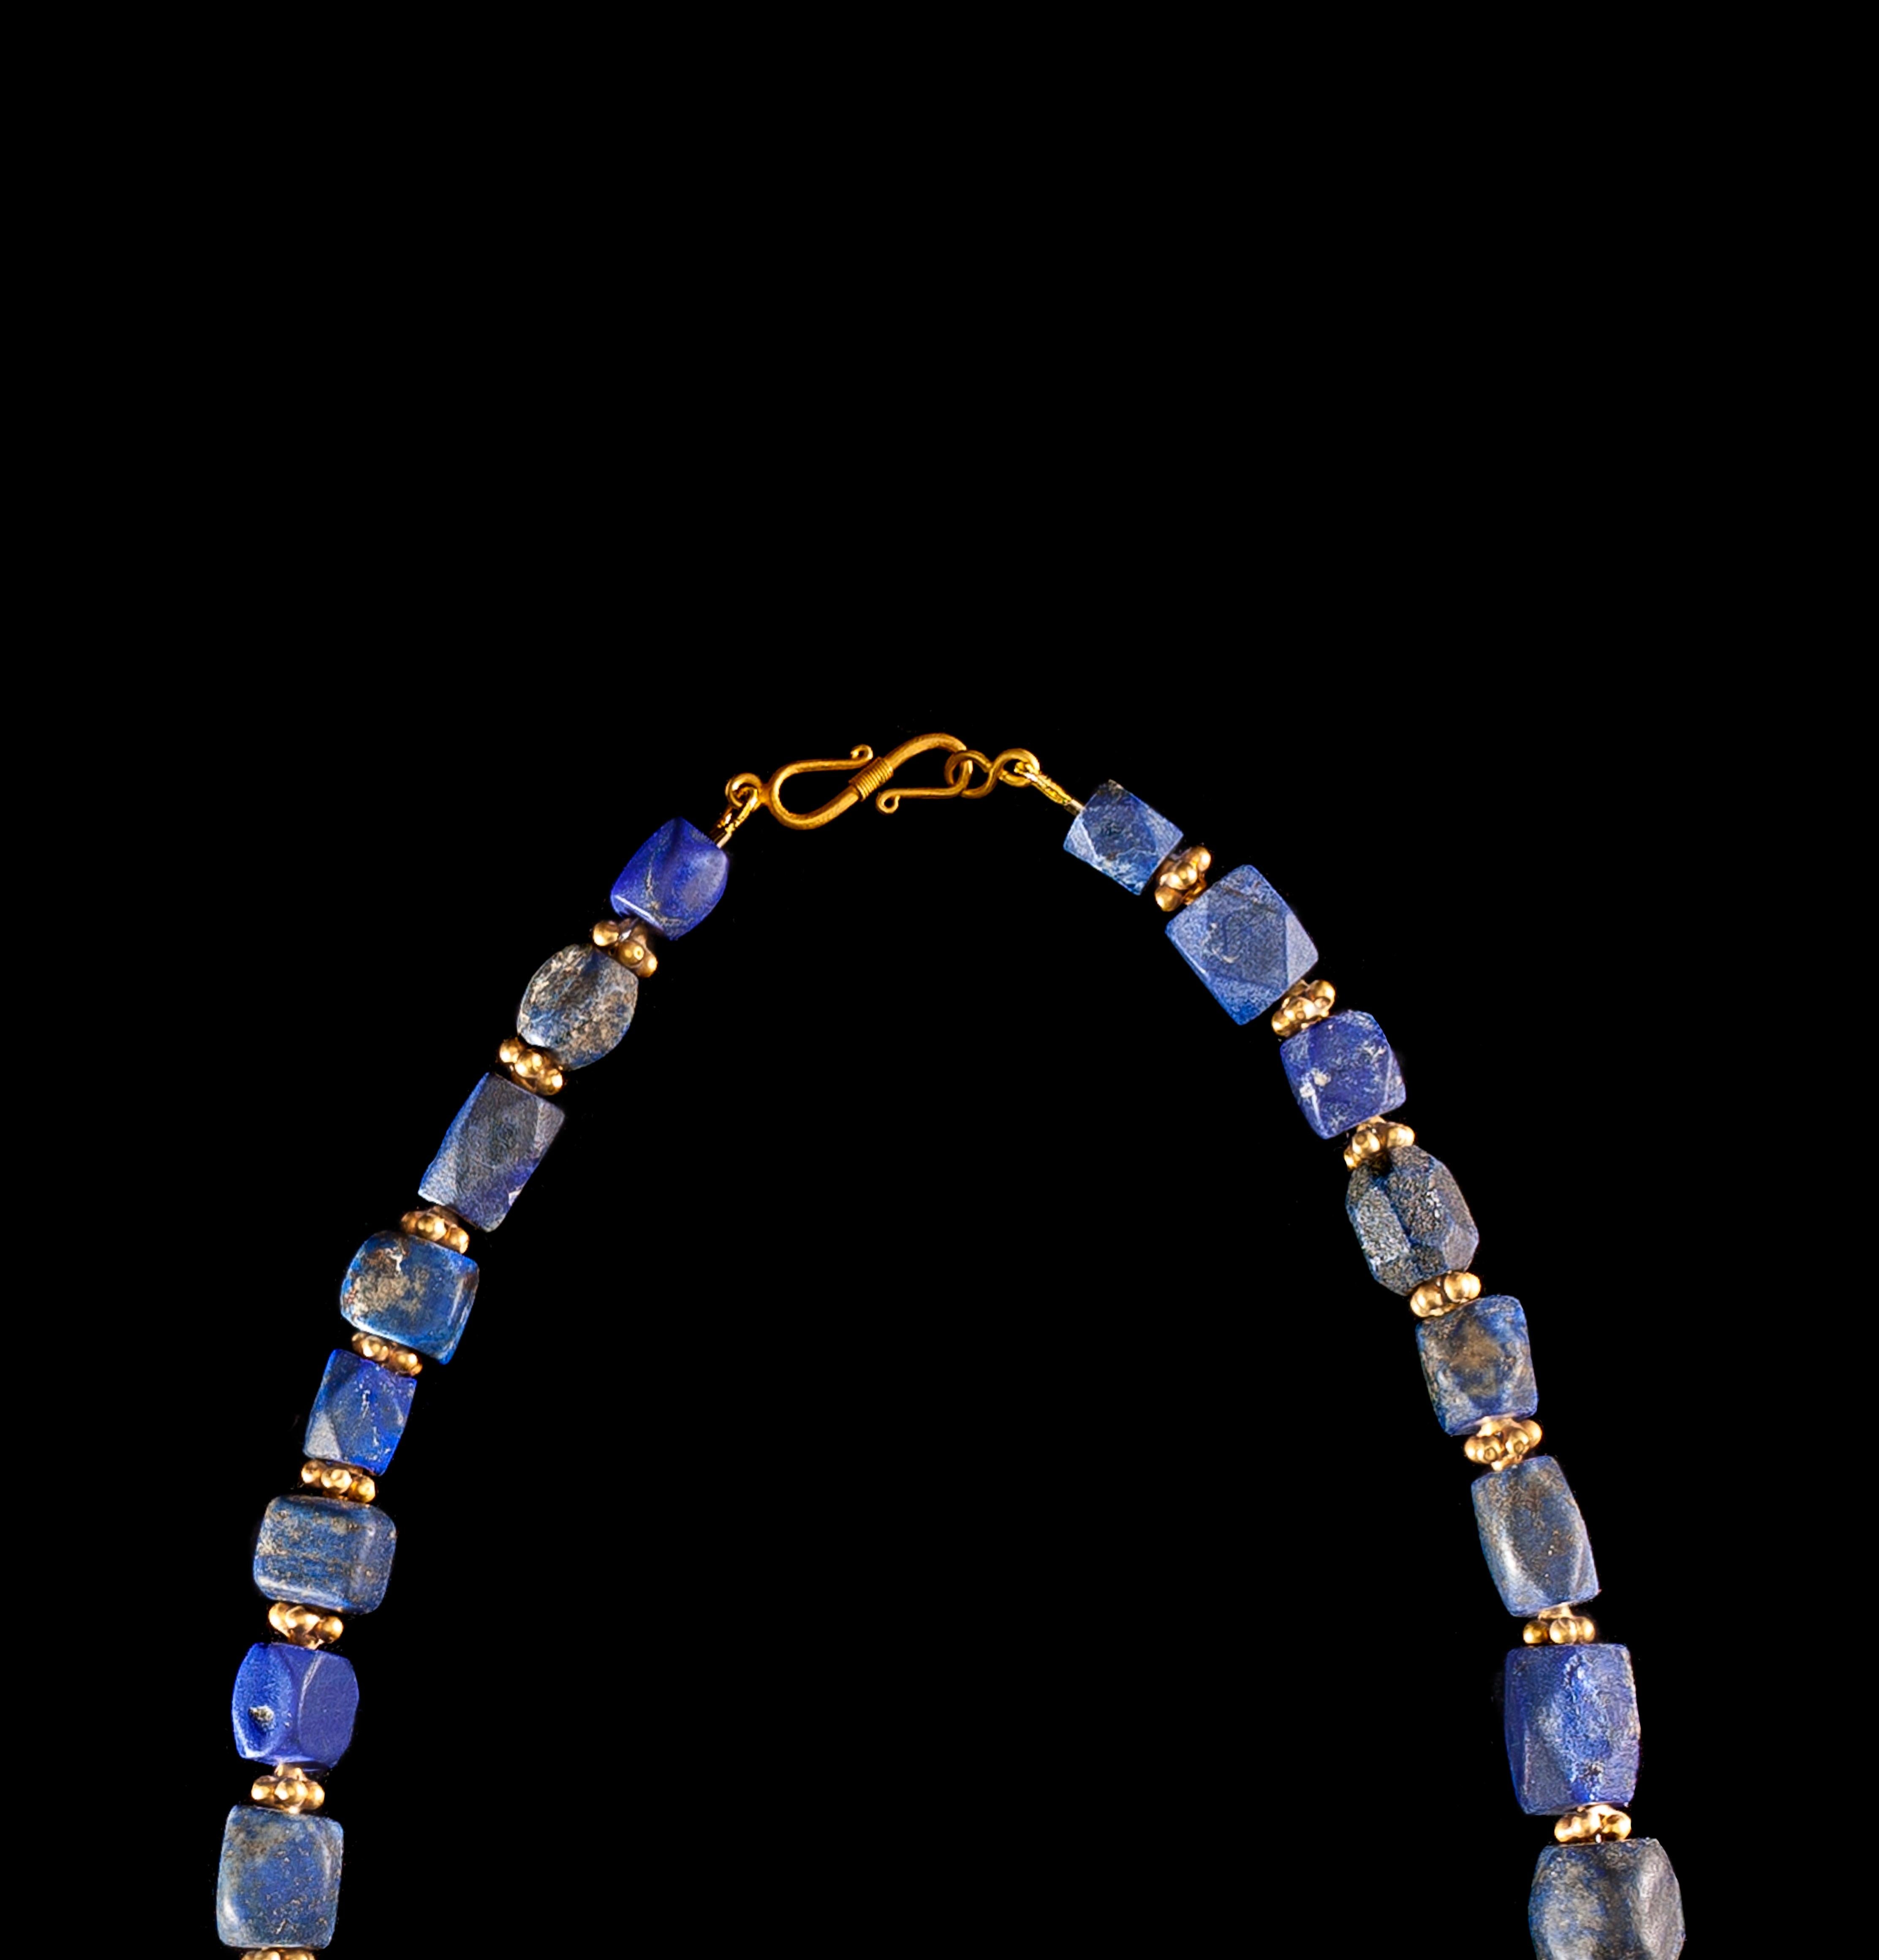 Bead Ancient Bactrian Lapis Lazuli Necklace with 18 Carat Clasp